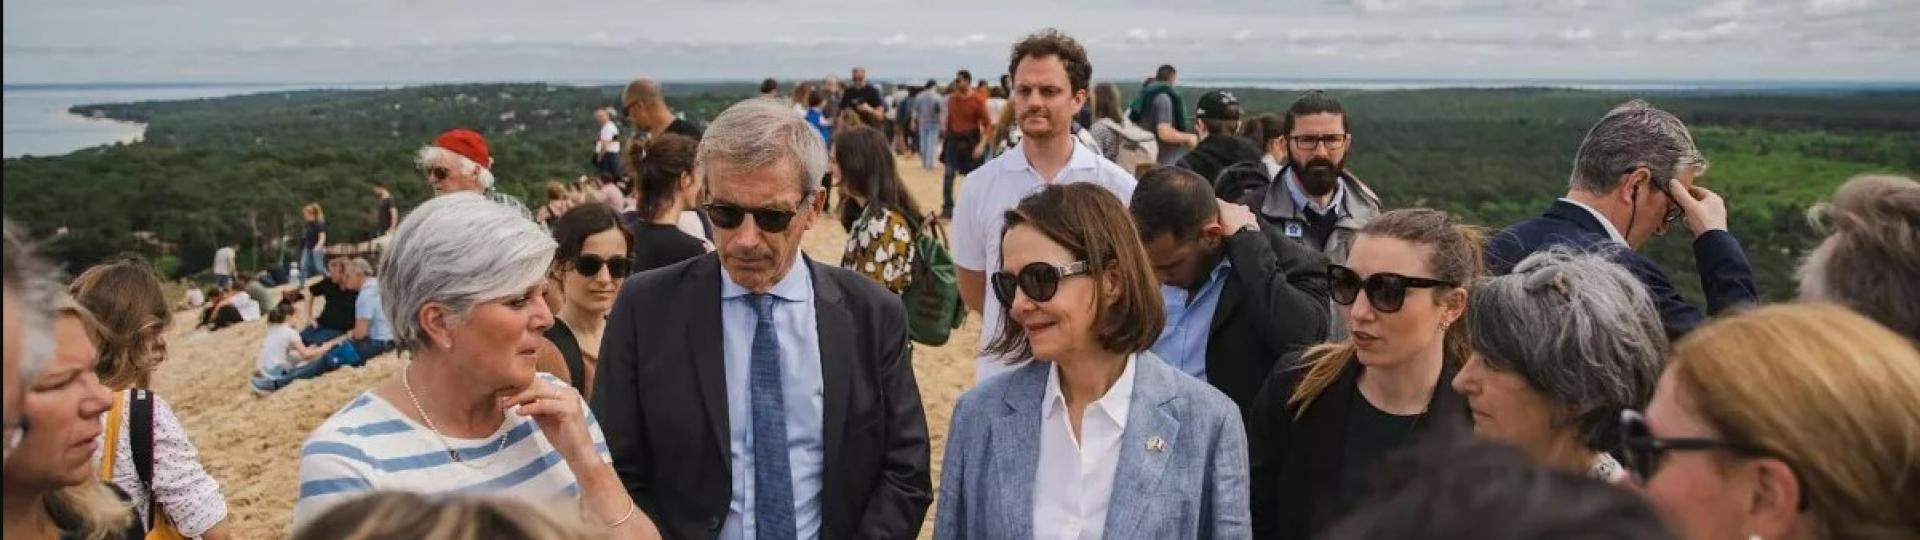 L'ambassadrice des Etats-Unis en France s'est rendue à la Dune du Pilat